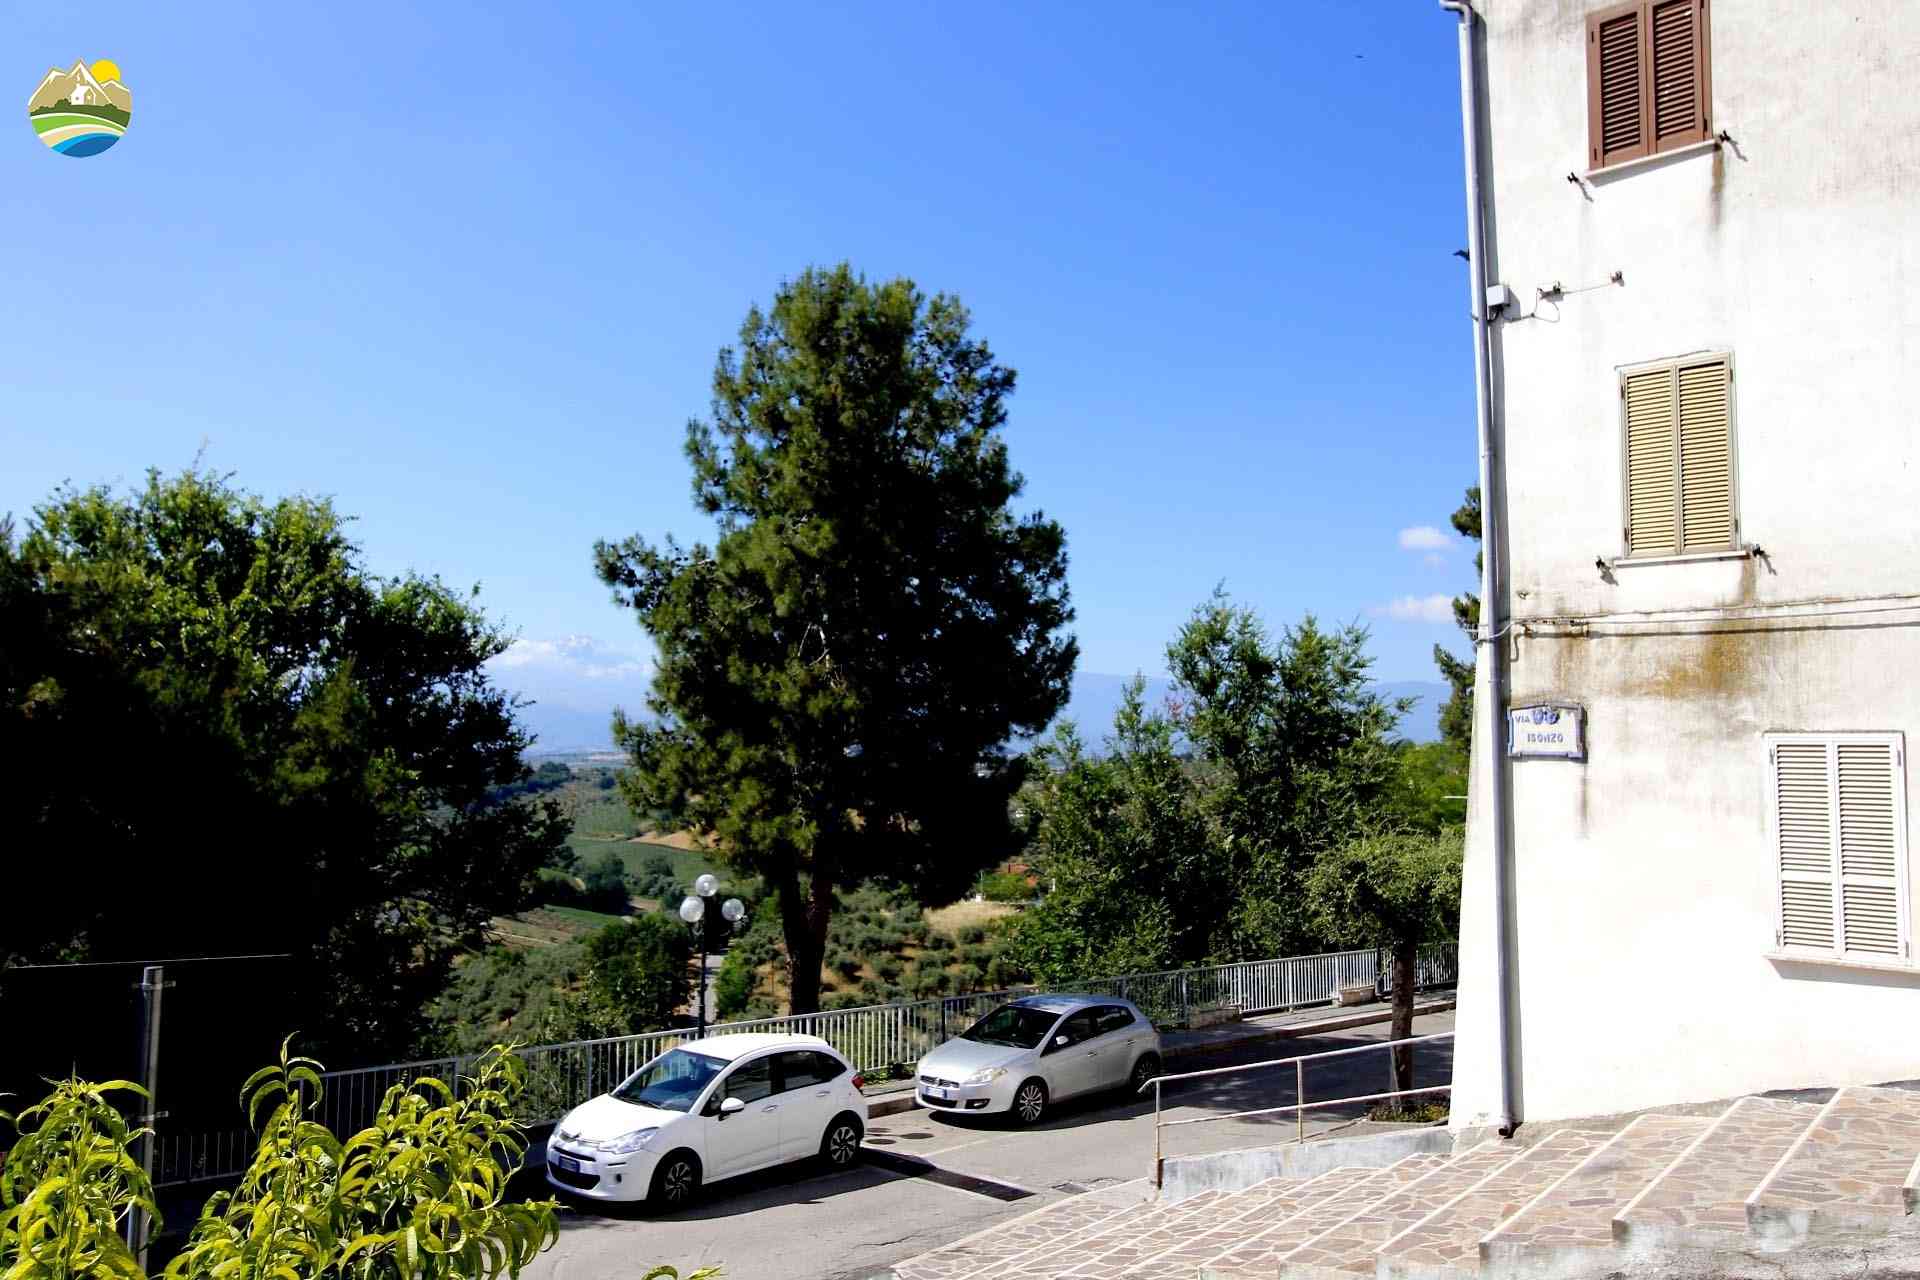 Casa in paese Casa in paese in vendita Pianella (PE), Casa della Torre - Pianella - EUR 37.139 590